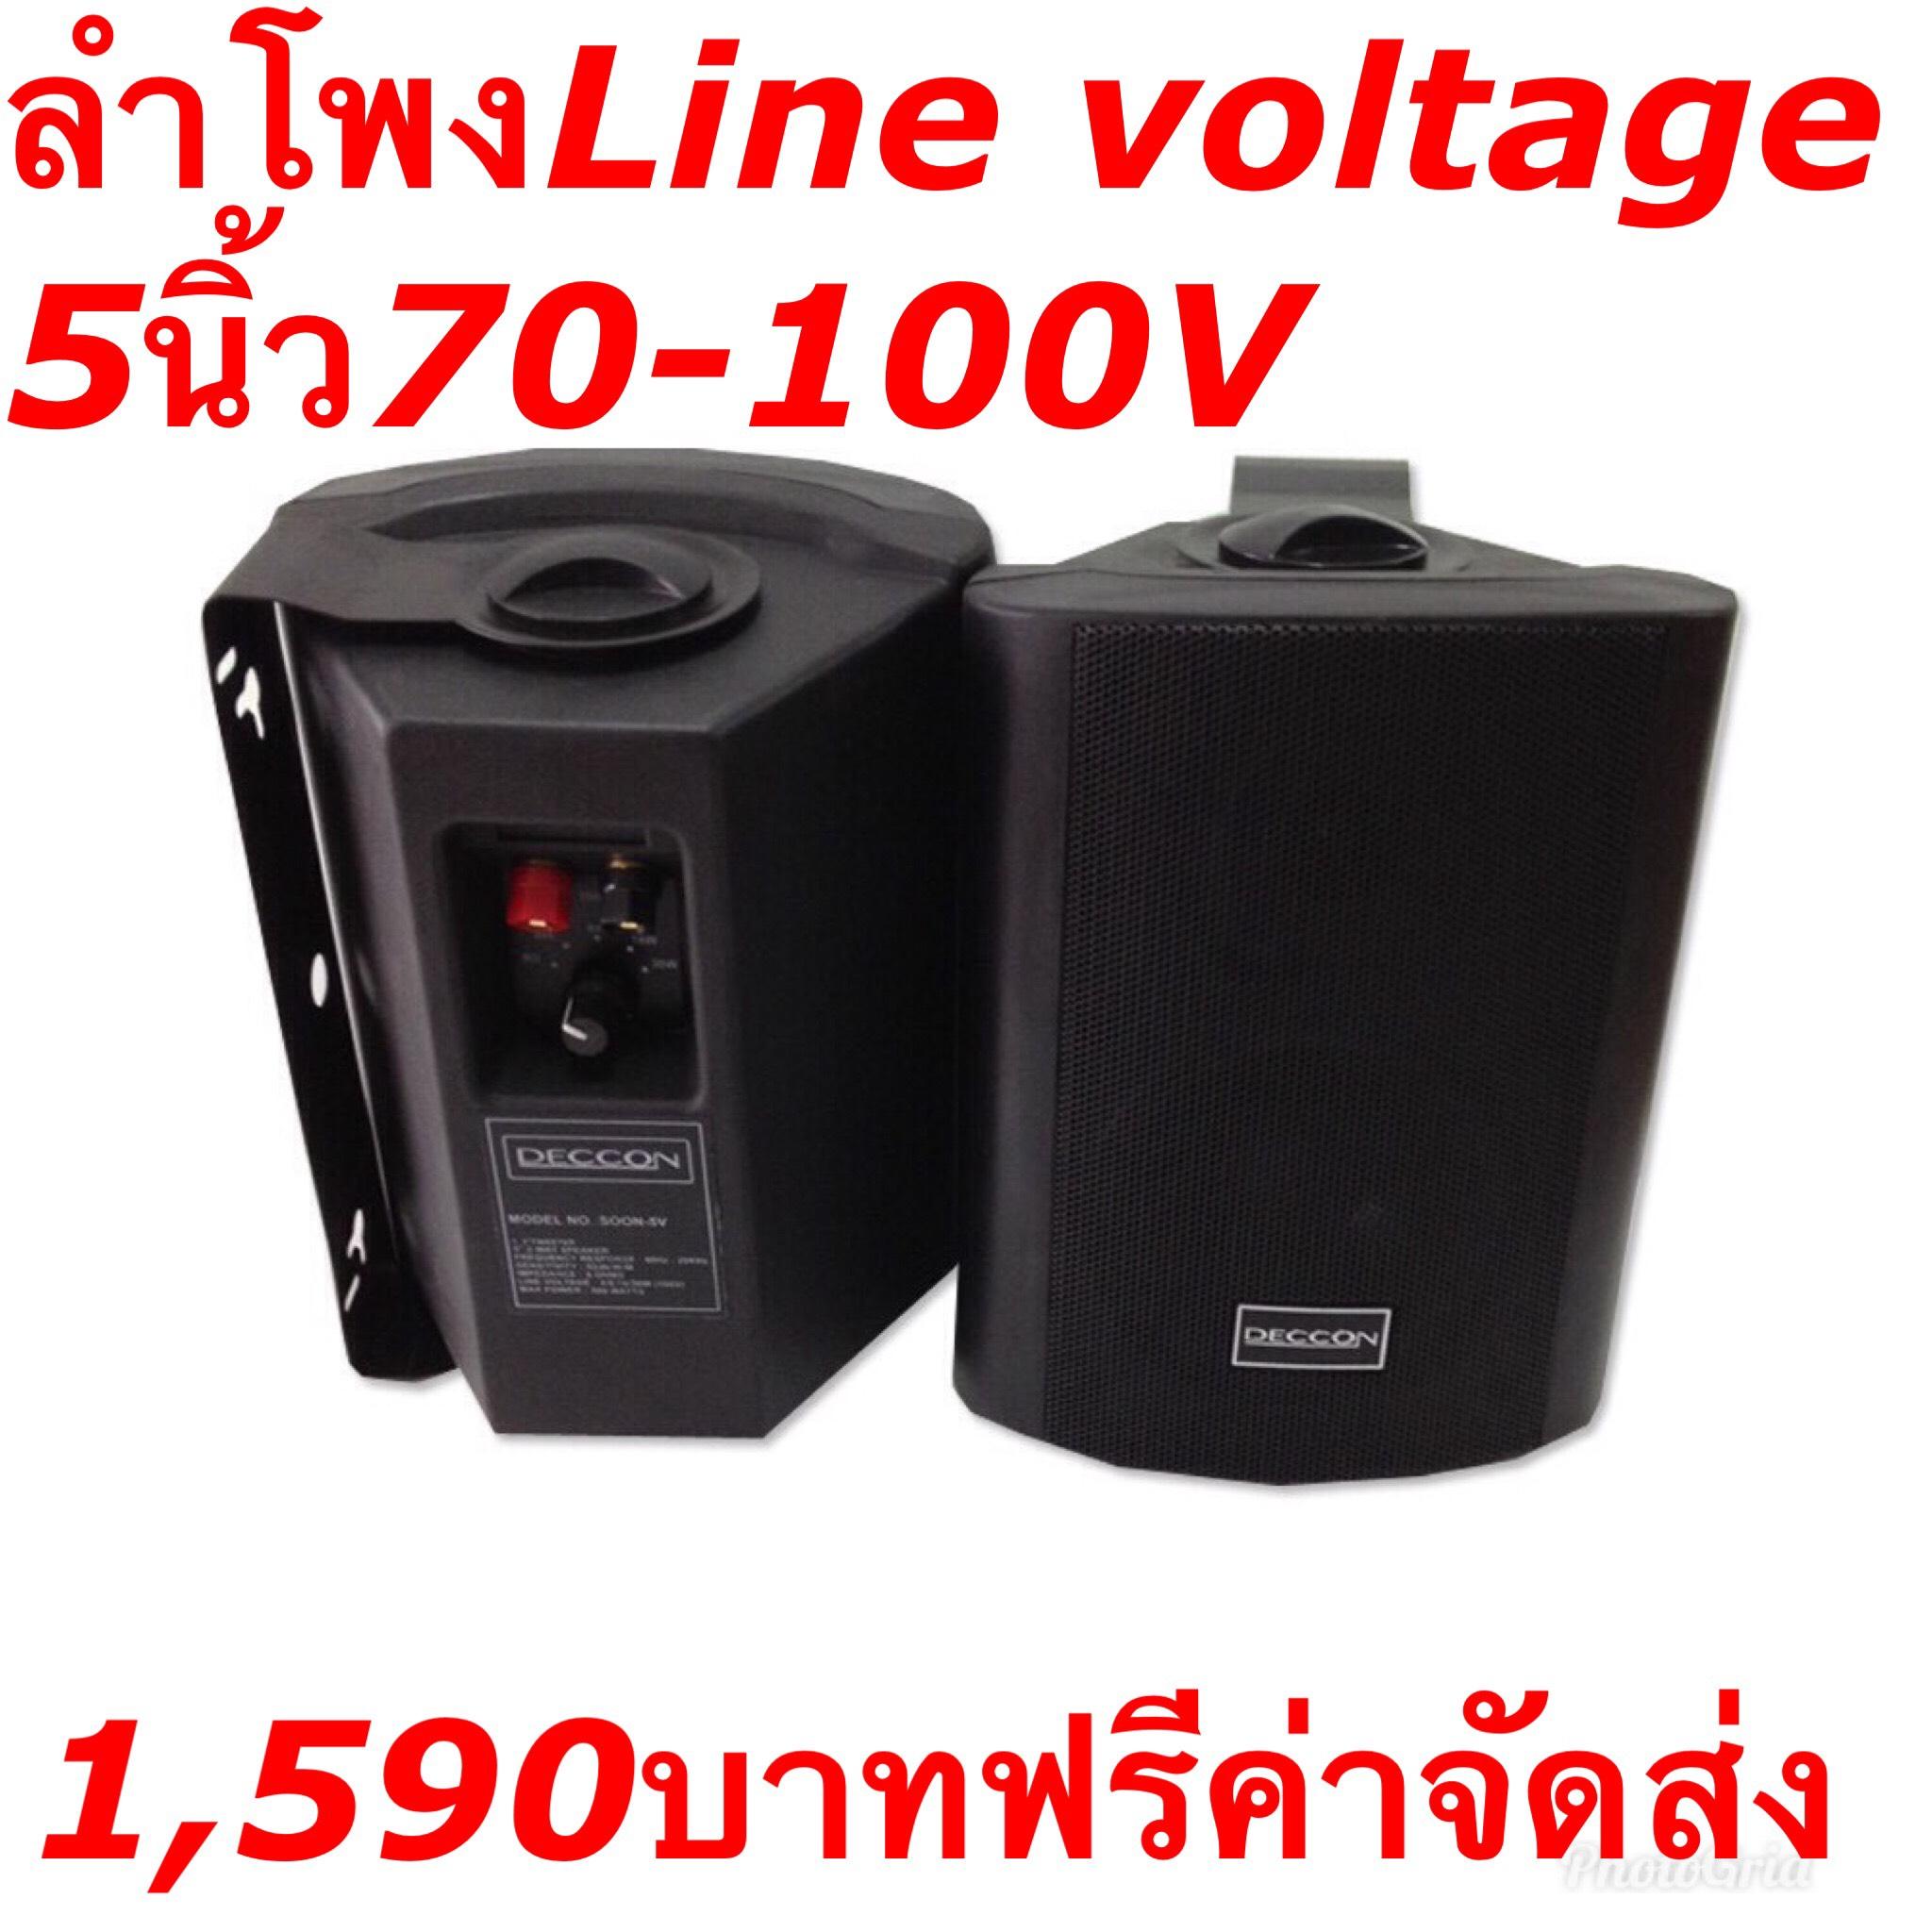 ลำโพงแขวน พร้อมLine Voltage 4/8/16/30W 70-100V  ลำโพงเสียงตามสายติดผนังพร้อมขาแขวน ลำโพงติดตามร้านอาหาร ห้องประชุม ห้องคาระโกะ  5นิ้ว รุ่น-SOON-5V (สีดำ)  (คู่)